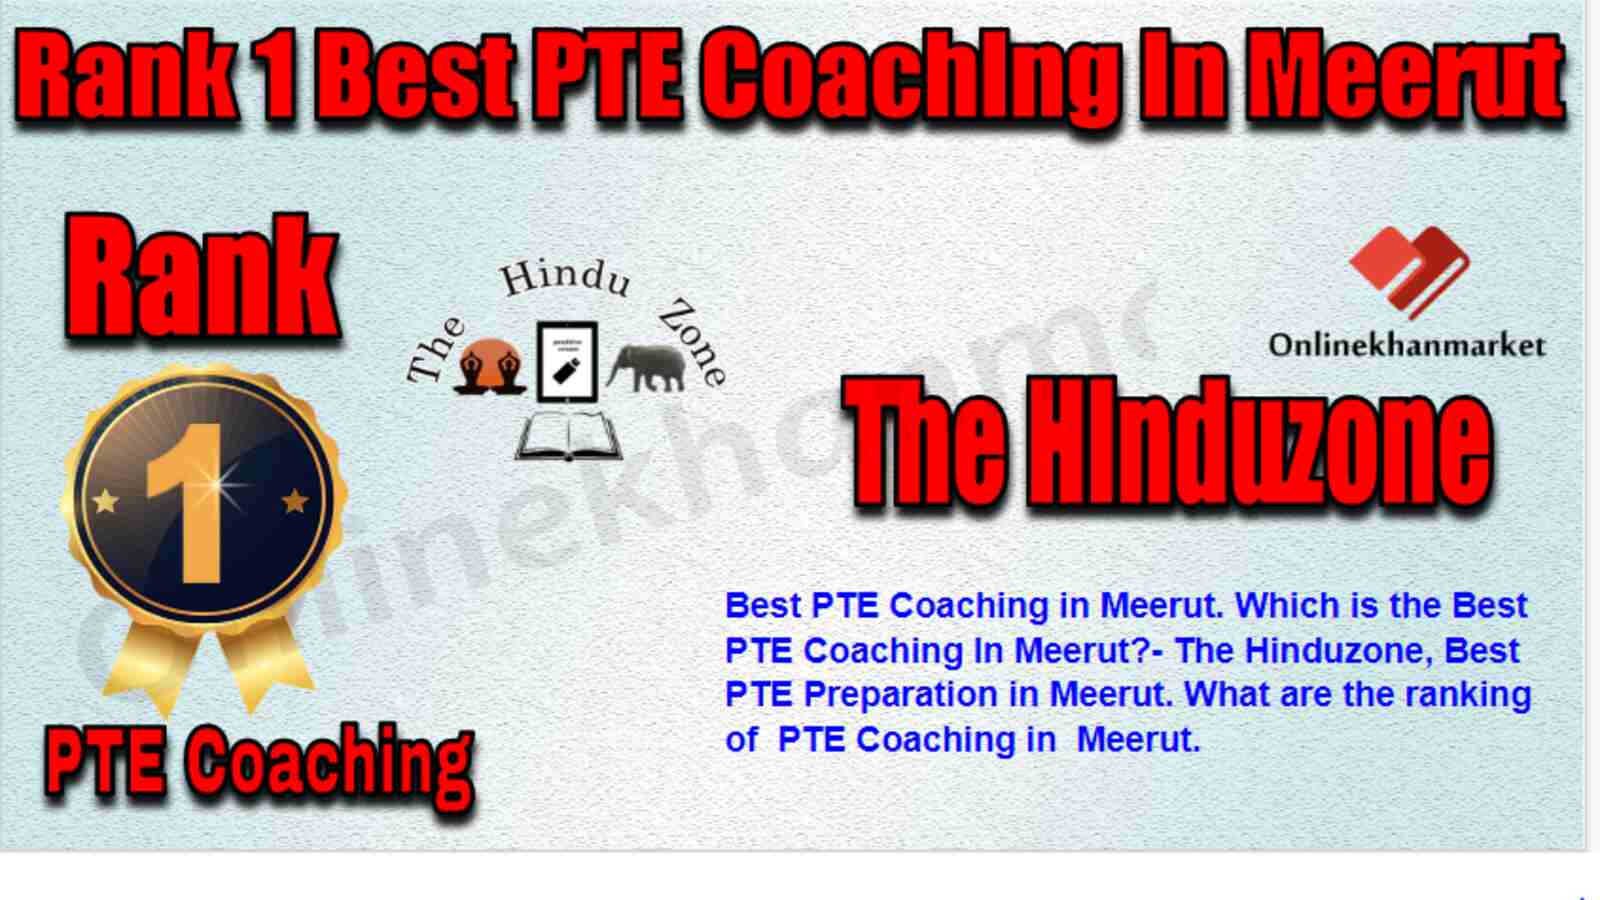 Rank 1 Best PTE Coaching in Meerut